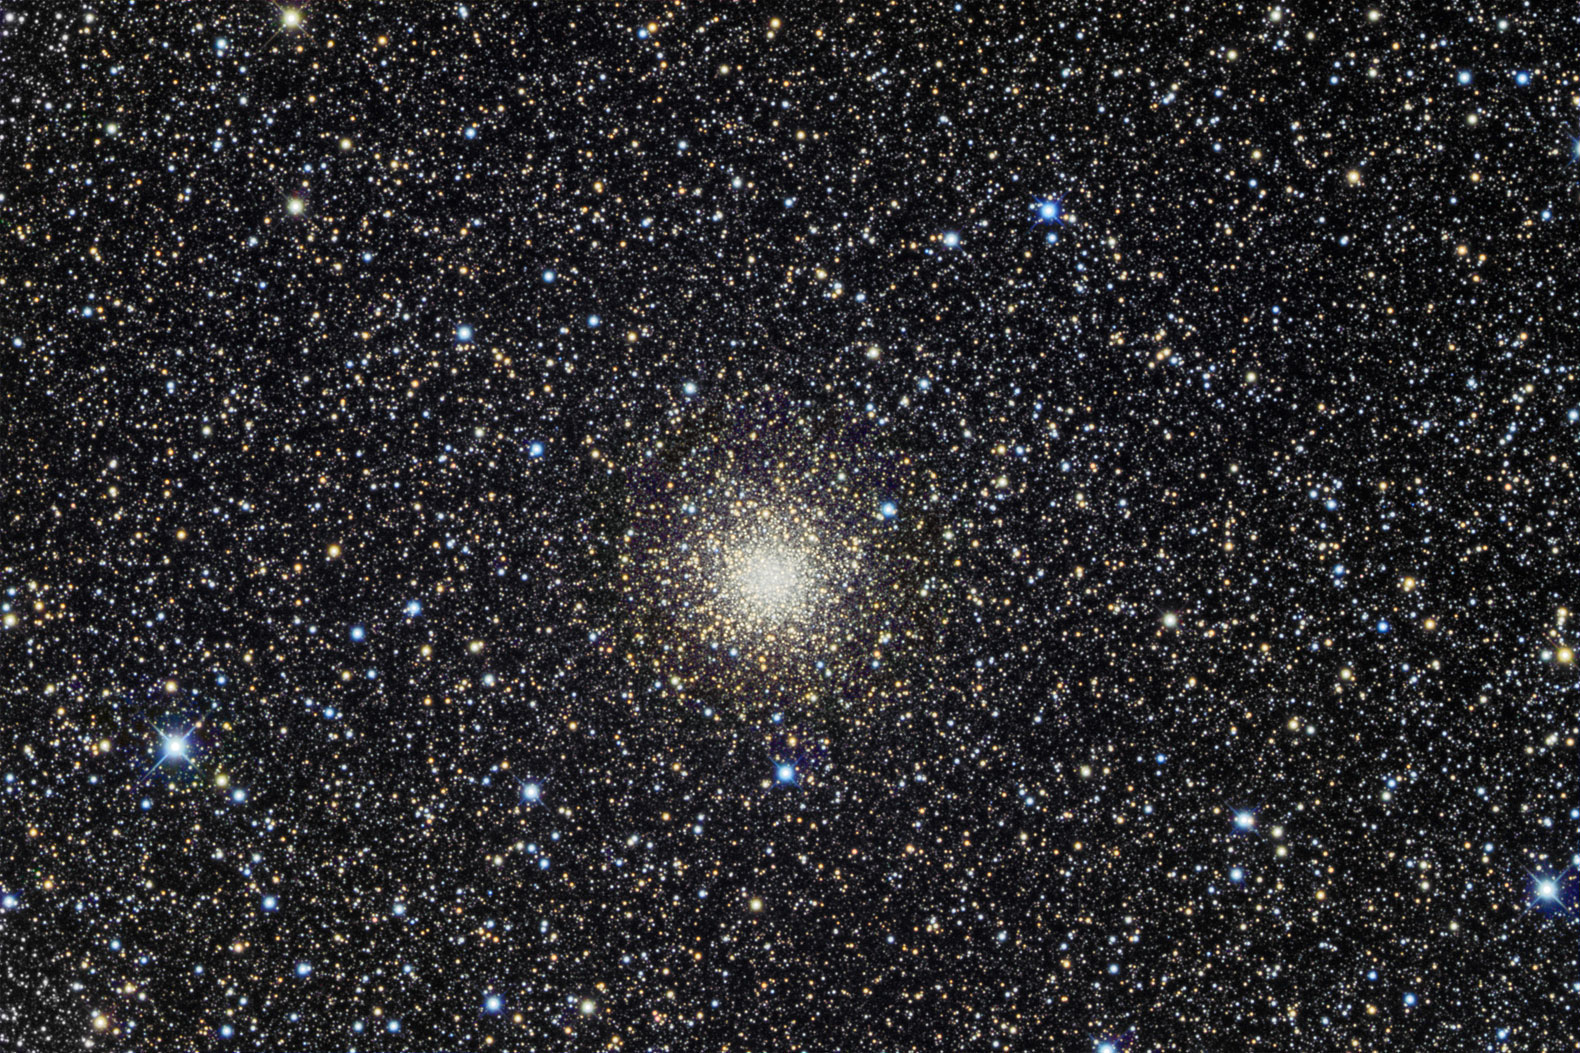 NGC 5927